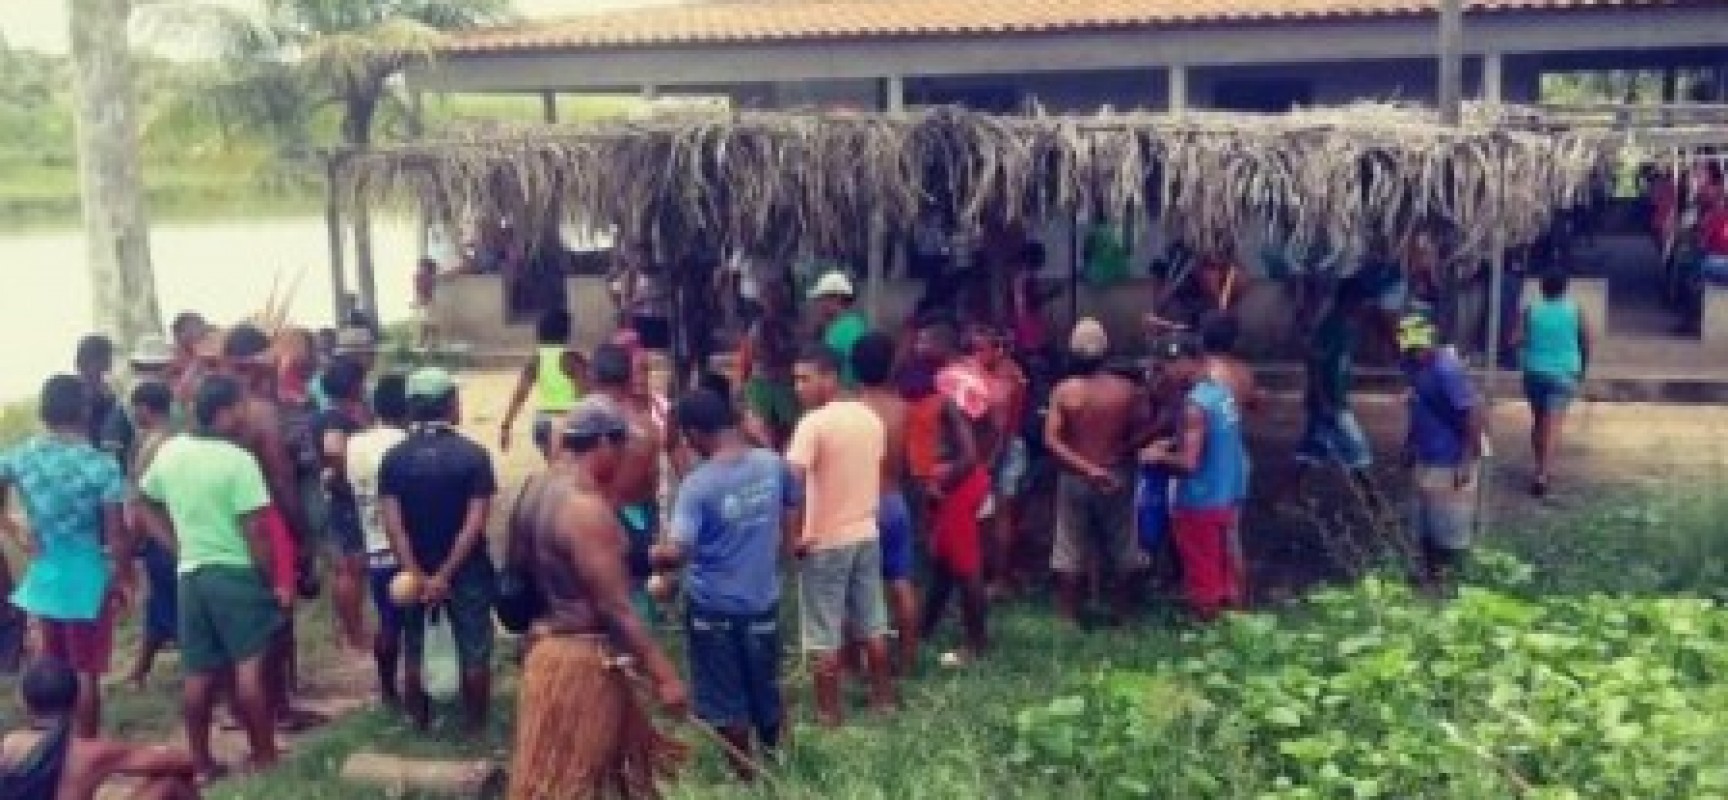 Jovem de 19 anos é segunda vítima de invasão a acampamento no sul da Bahia